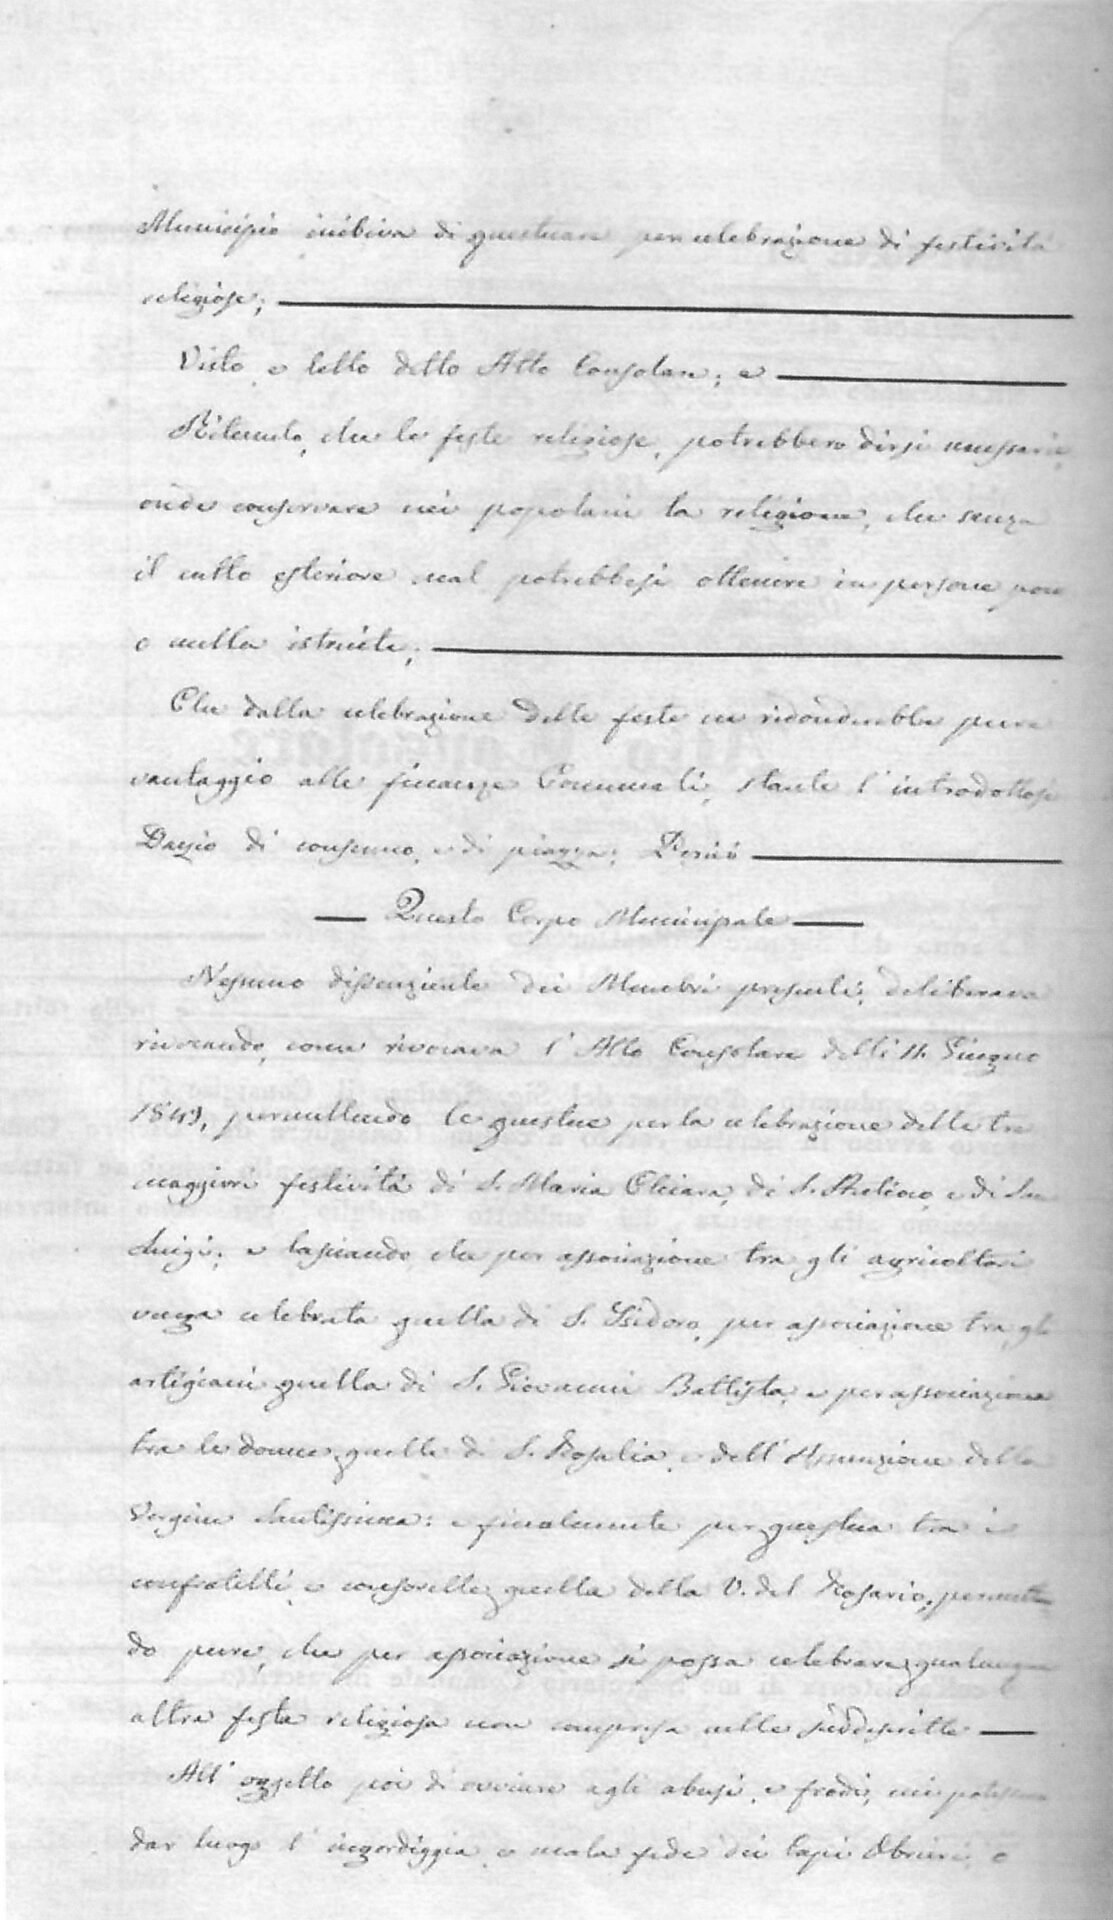 Fig. 2 ARCHIVIO COMUNALE DI CAGLIARI, Registro delle Deliberazioni di Consiglio, Vol. 2, c. 51., Consiglio Comunale di Pirri, delibera del 2 luglio 1857.